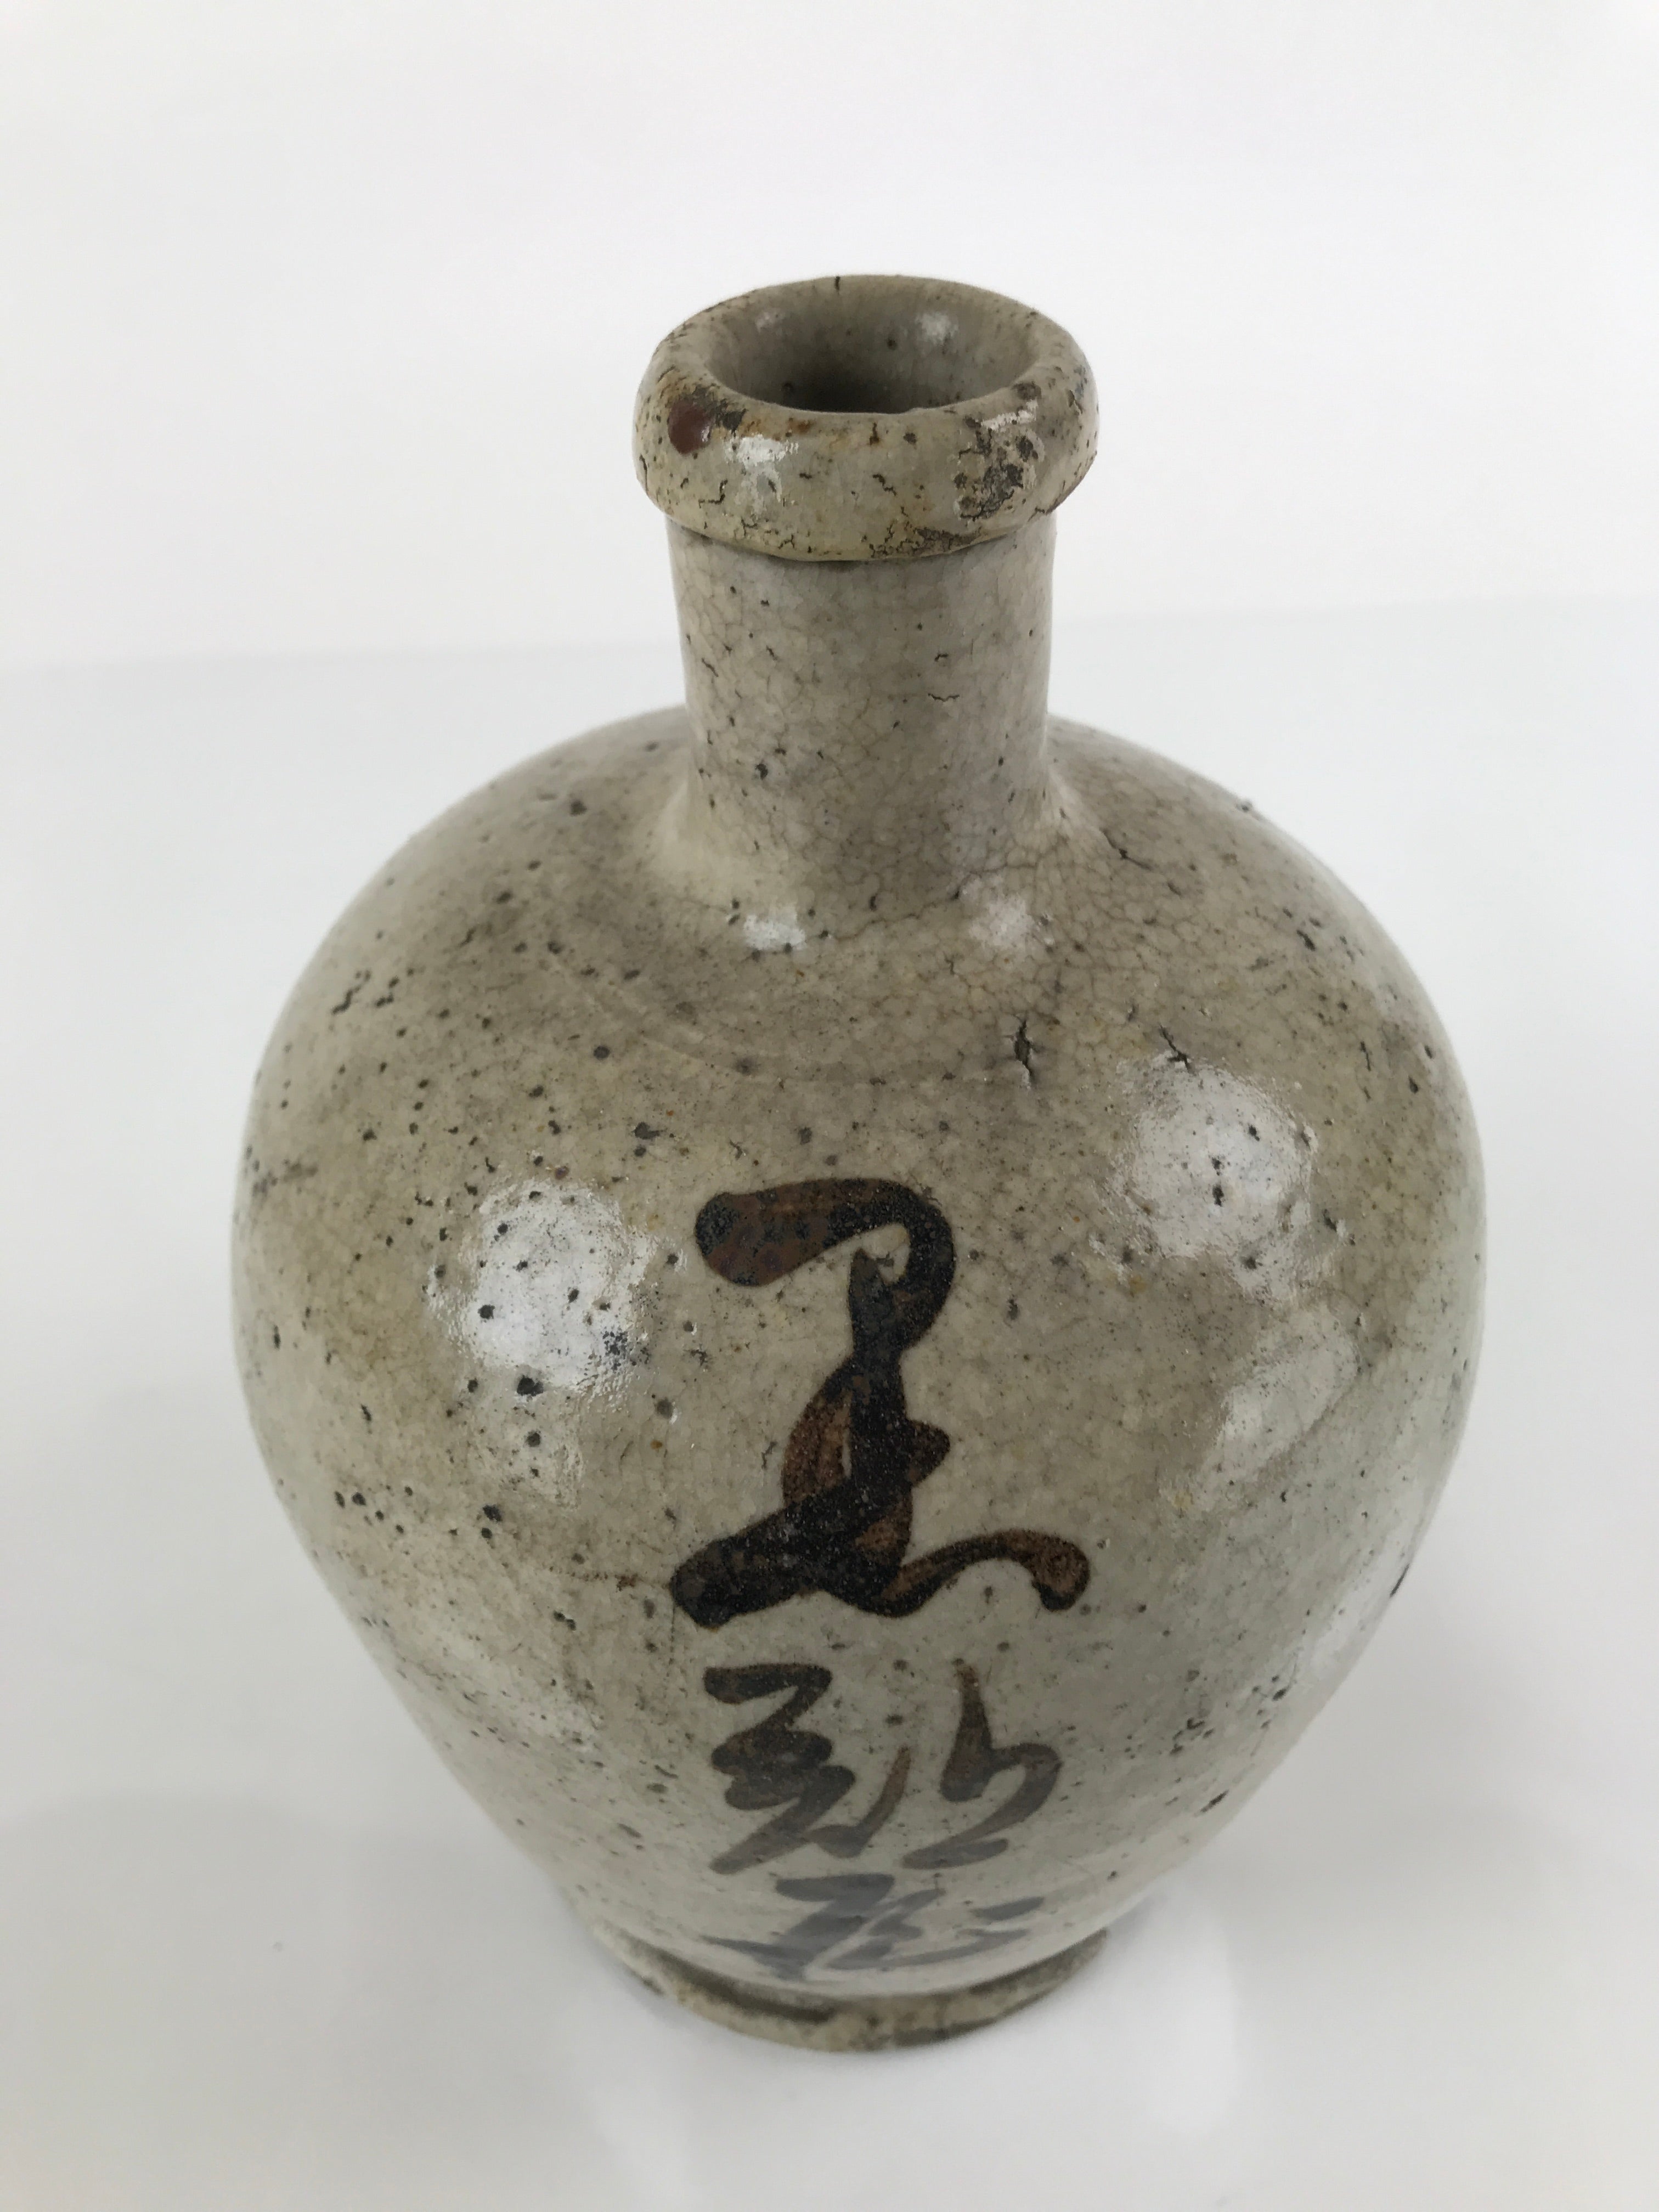 Antique C1880 Japanese Ceramic Sake Bottle Kayoi-Tokkuri Gray Black Kanji TS630